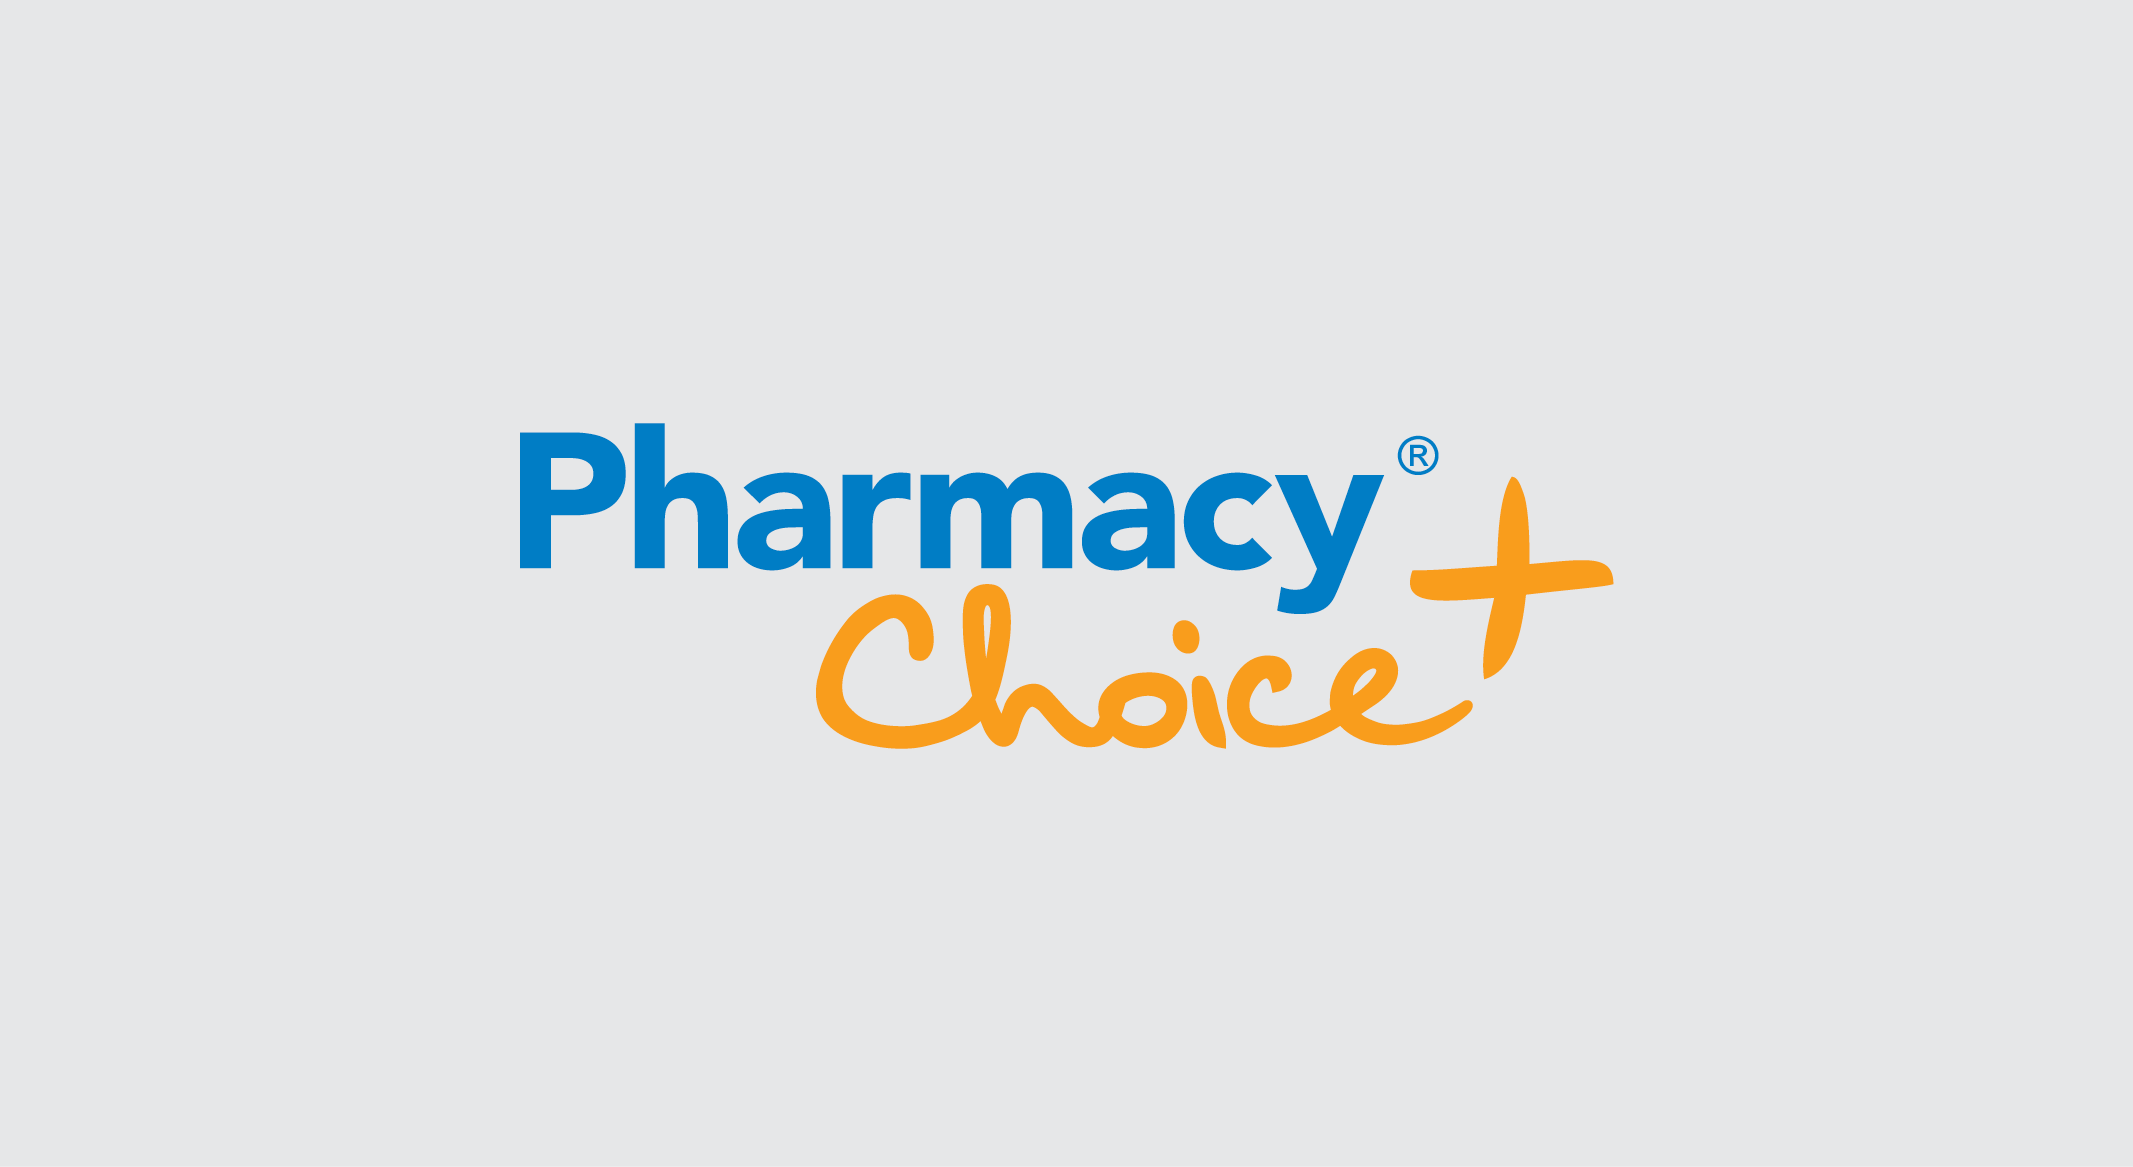 EBOS Pharmacy Choice rgb v2